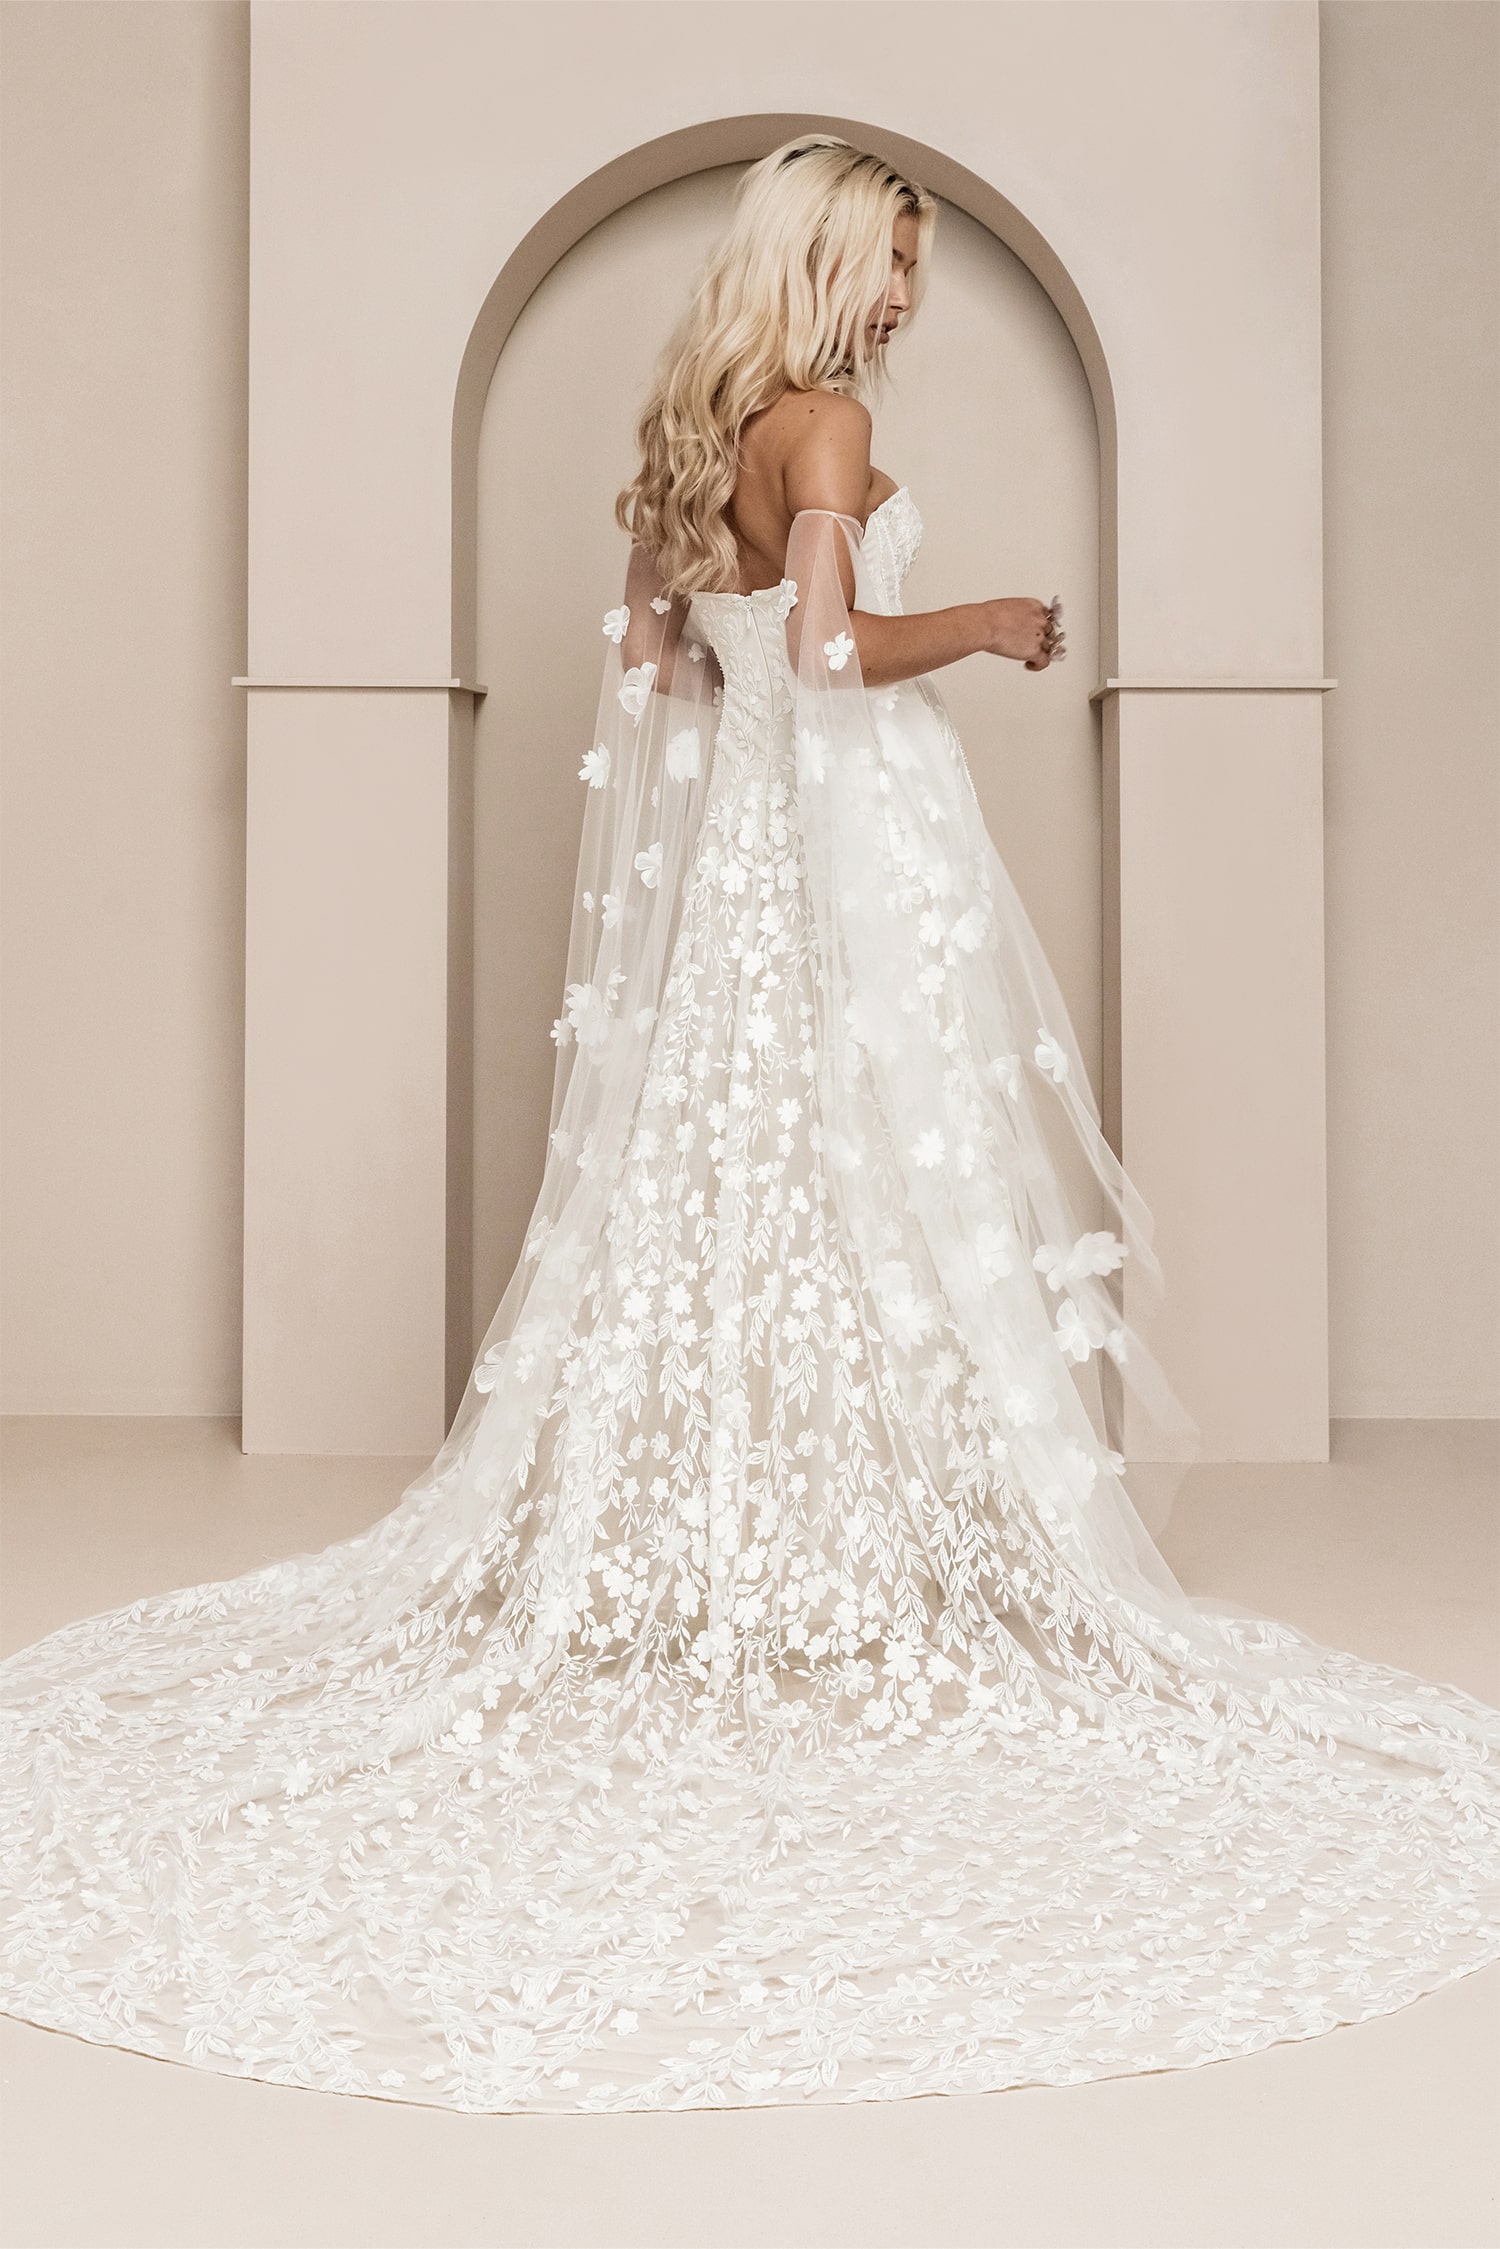 atelier-lawenda-berlin-gdynia-hochzeitskleider-brautkleider-wedding-dresses-rue-de-seine-cora-off-white-gown